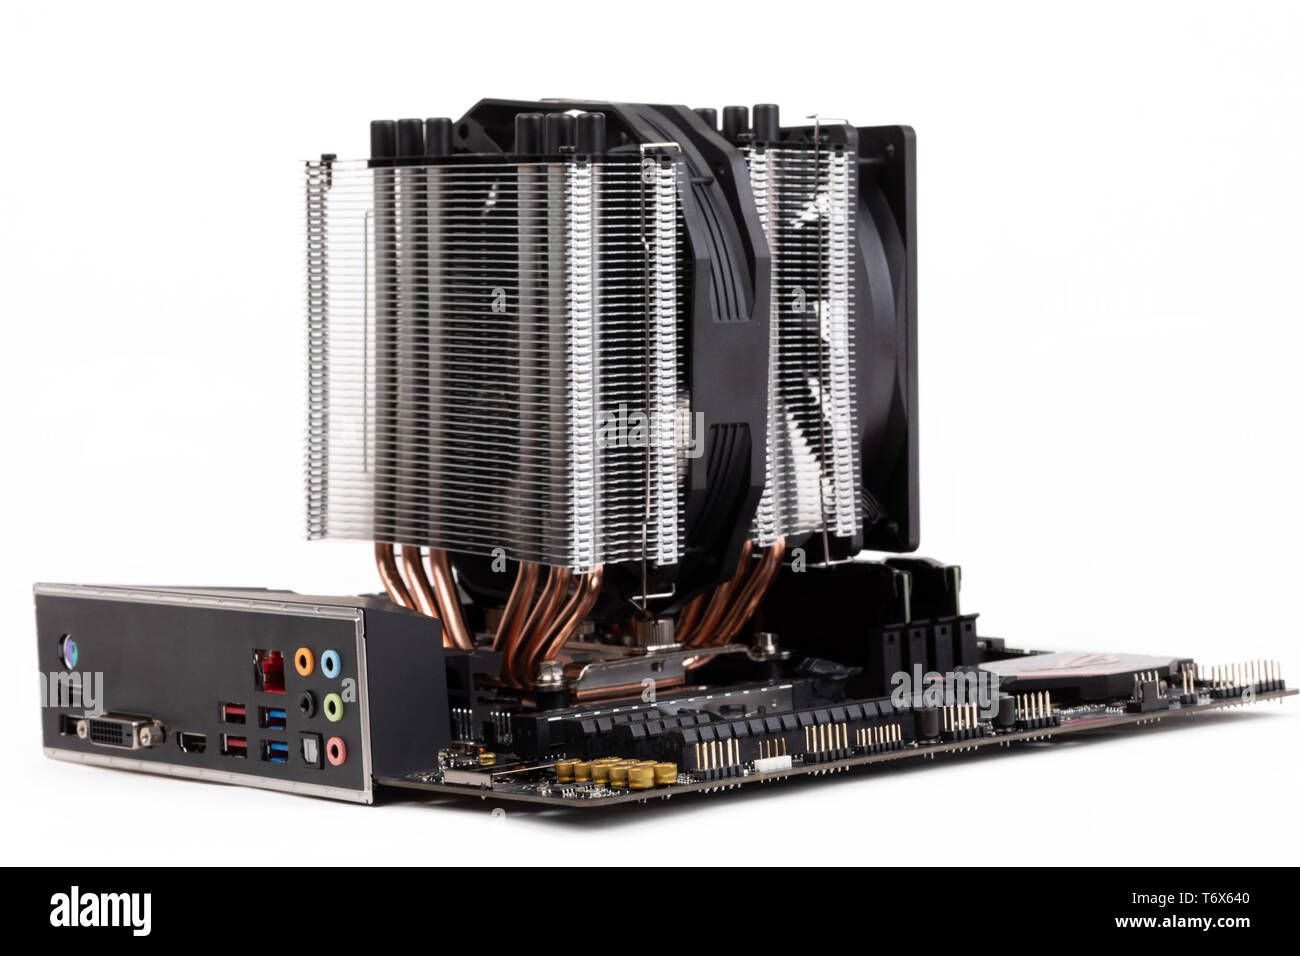 PC-Mainboard mit CPU-Kühler auf Weiß Stockfotografie - Alamy